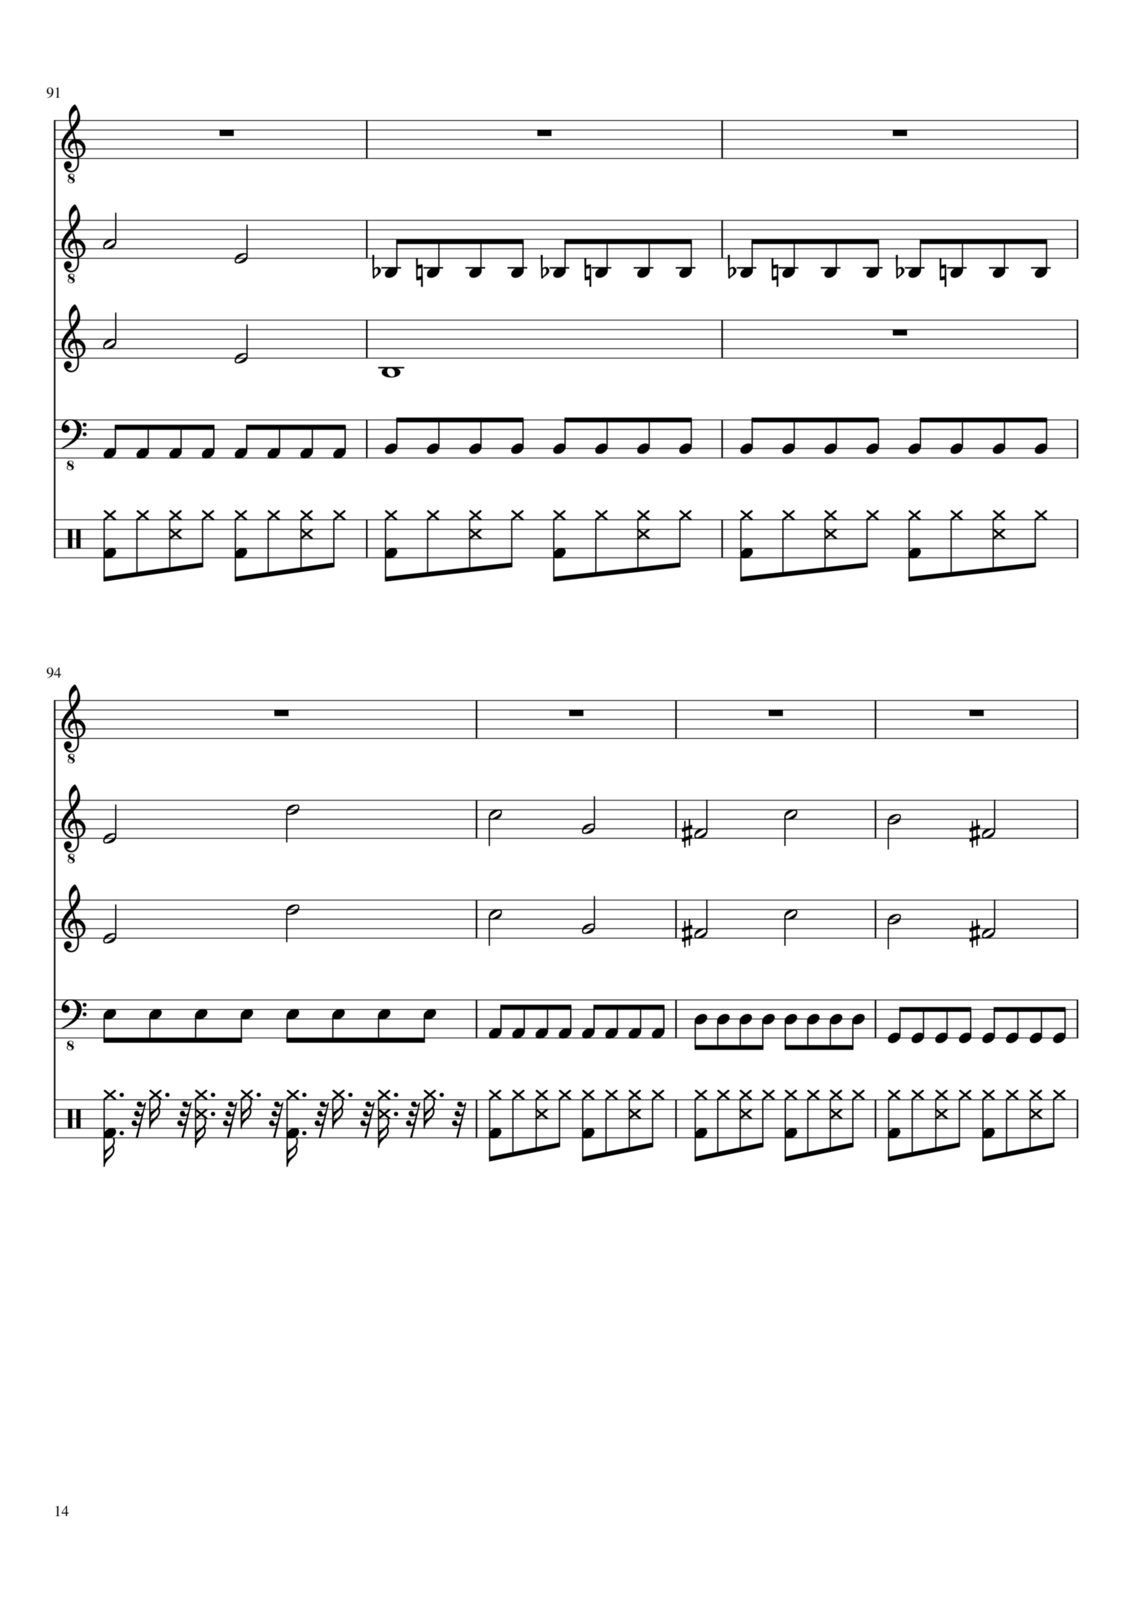 Vospominaniya o byiloy lyubvi slide, Image 14